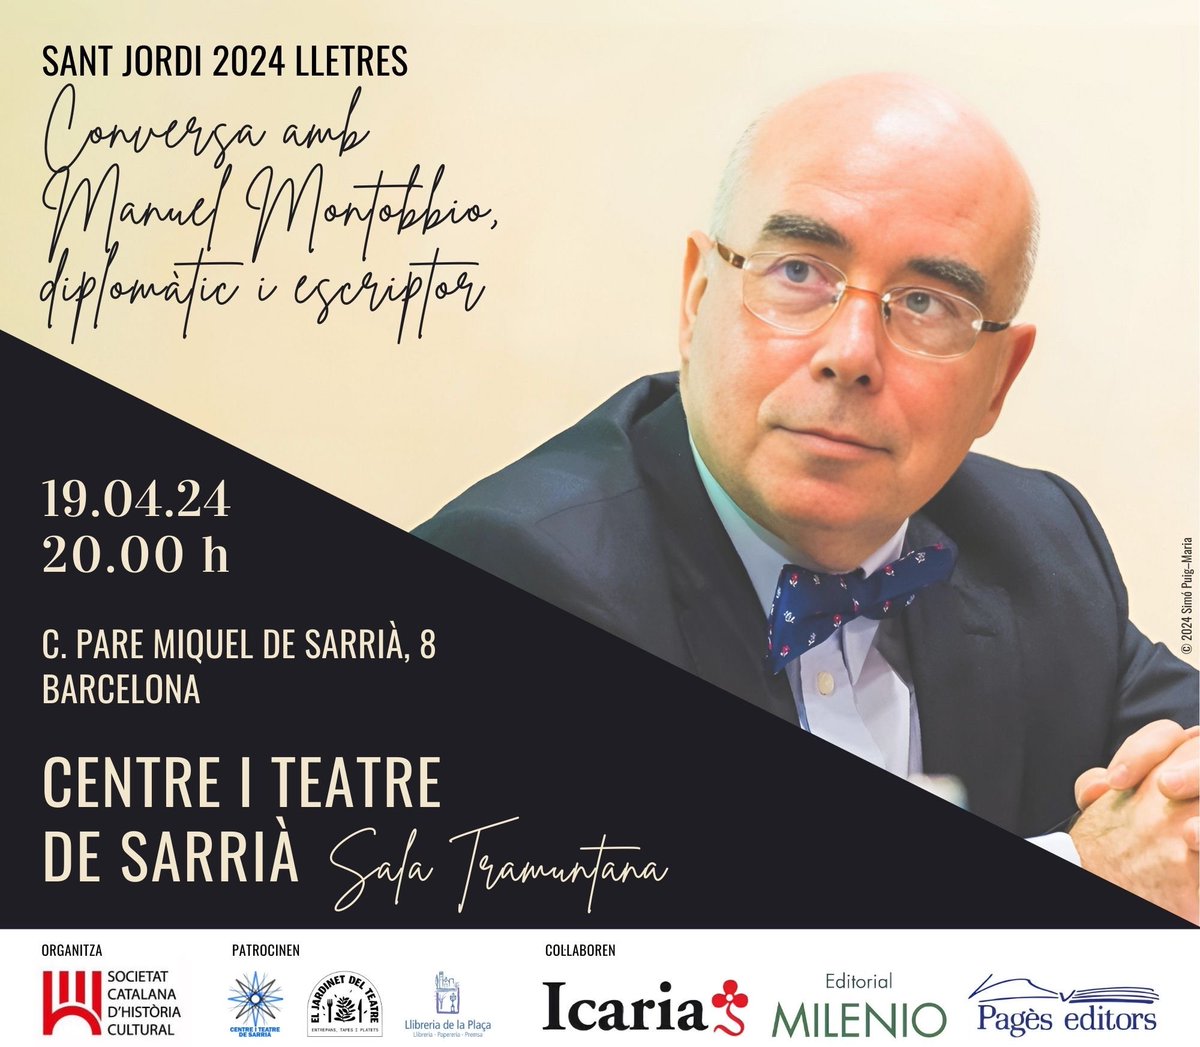 En @ManuelMontobbio serà el protagonista del Sant Jordi 2024 Lletres, organitzat per la Societat Catalana d’Història Cultural @histcultcat. L’esdeveniment tindrà lloc el divendres 19 d’abril, a les 20:00, al Centre i Teatre de Sarrià